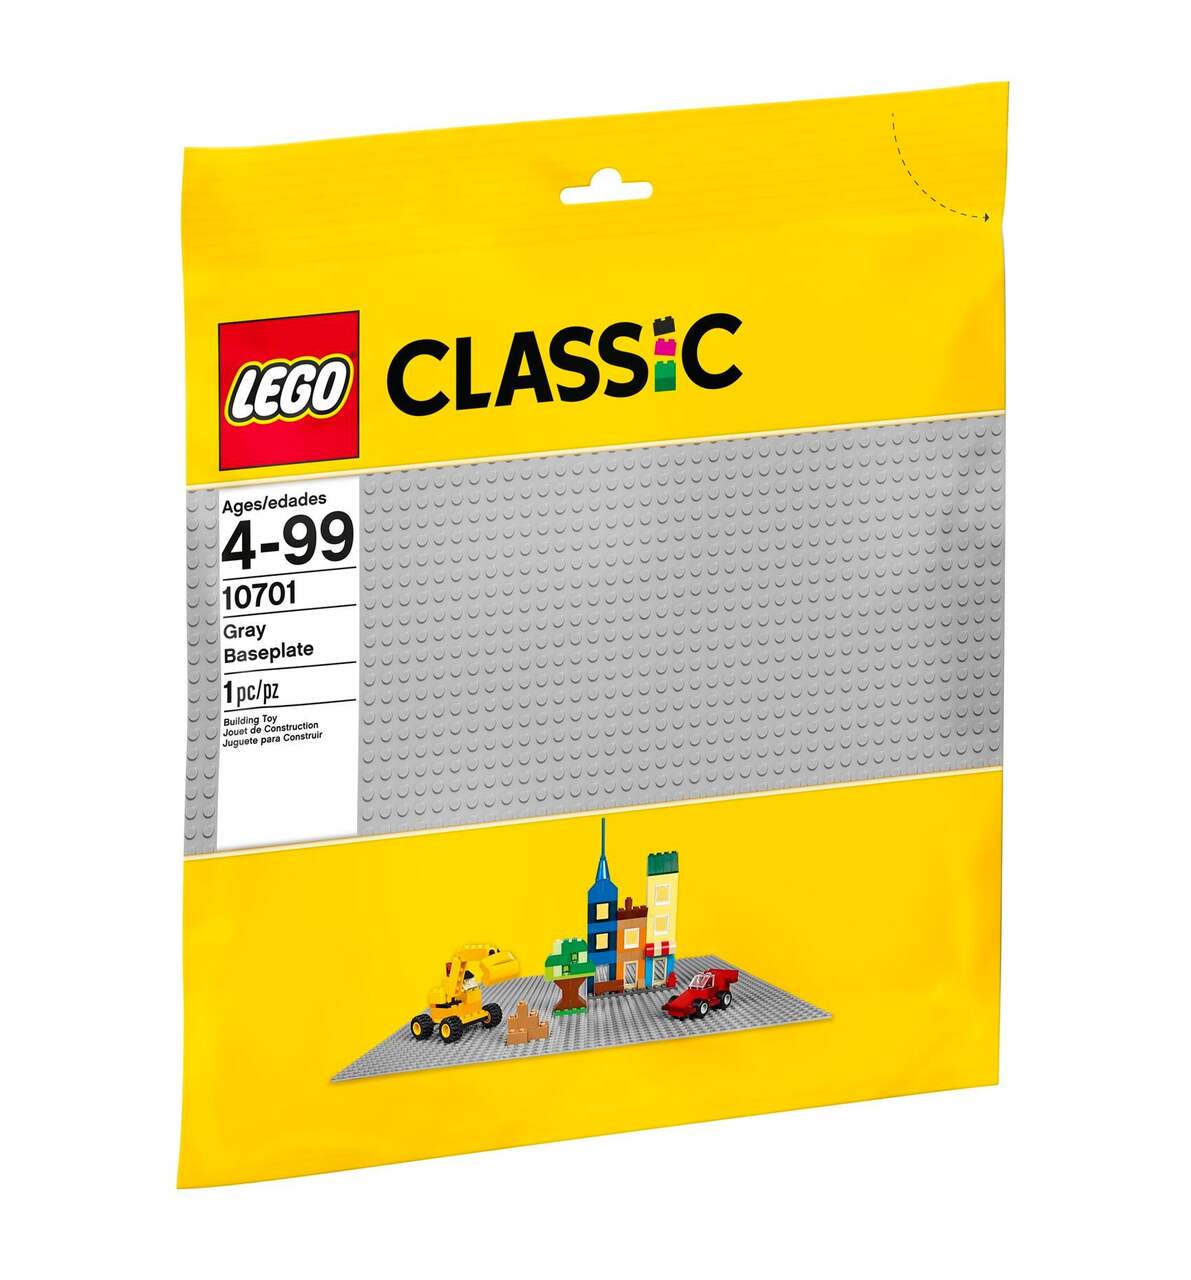 LEGO 11023 Green Baseplate